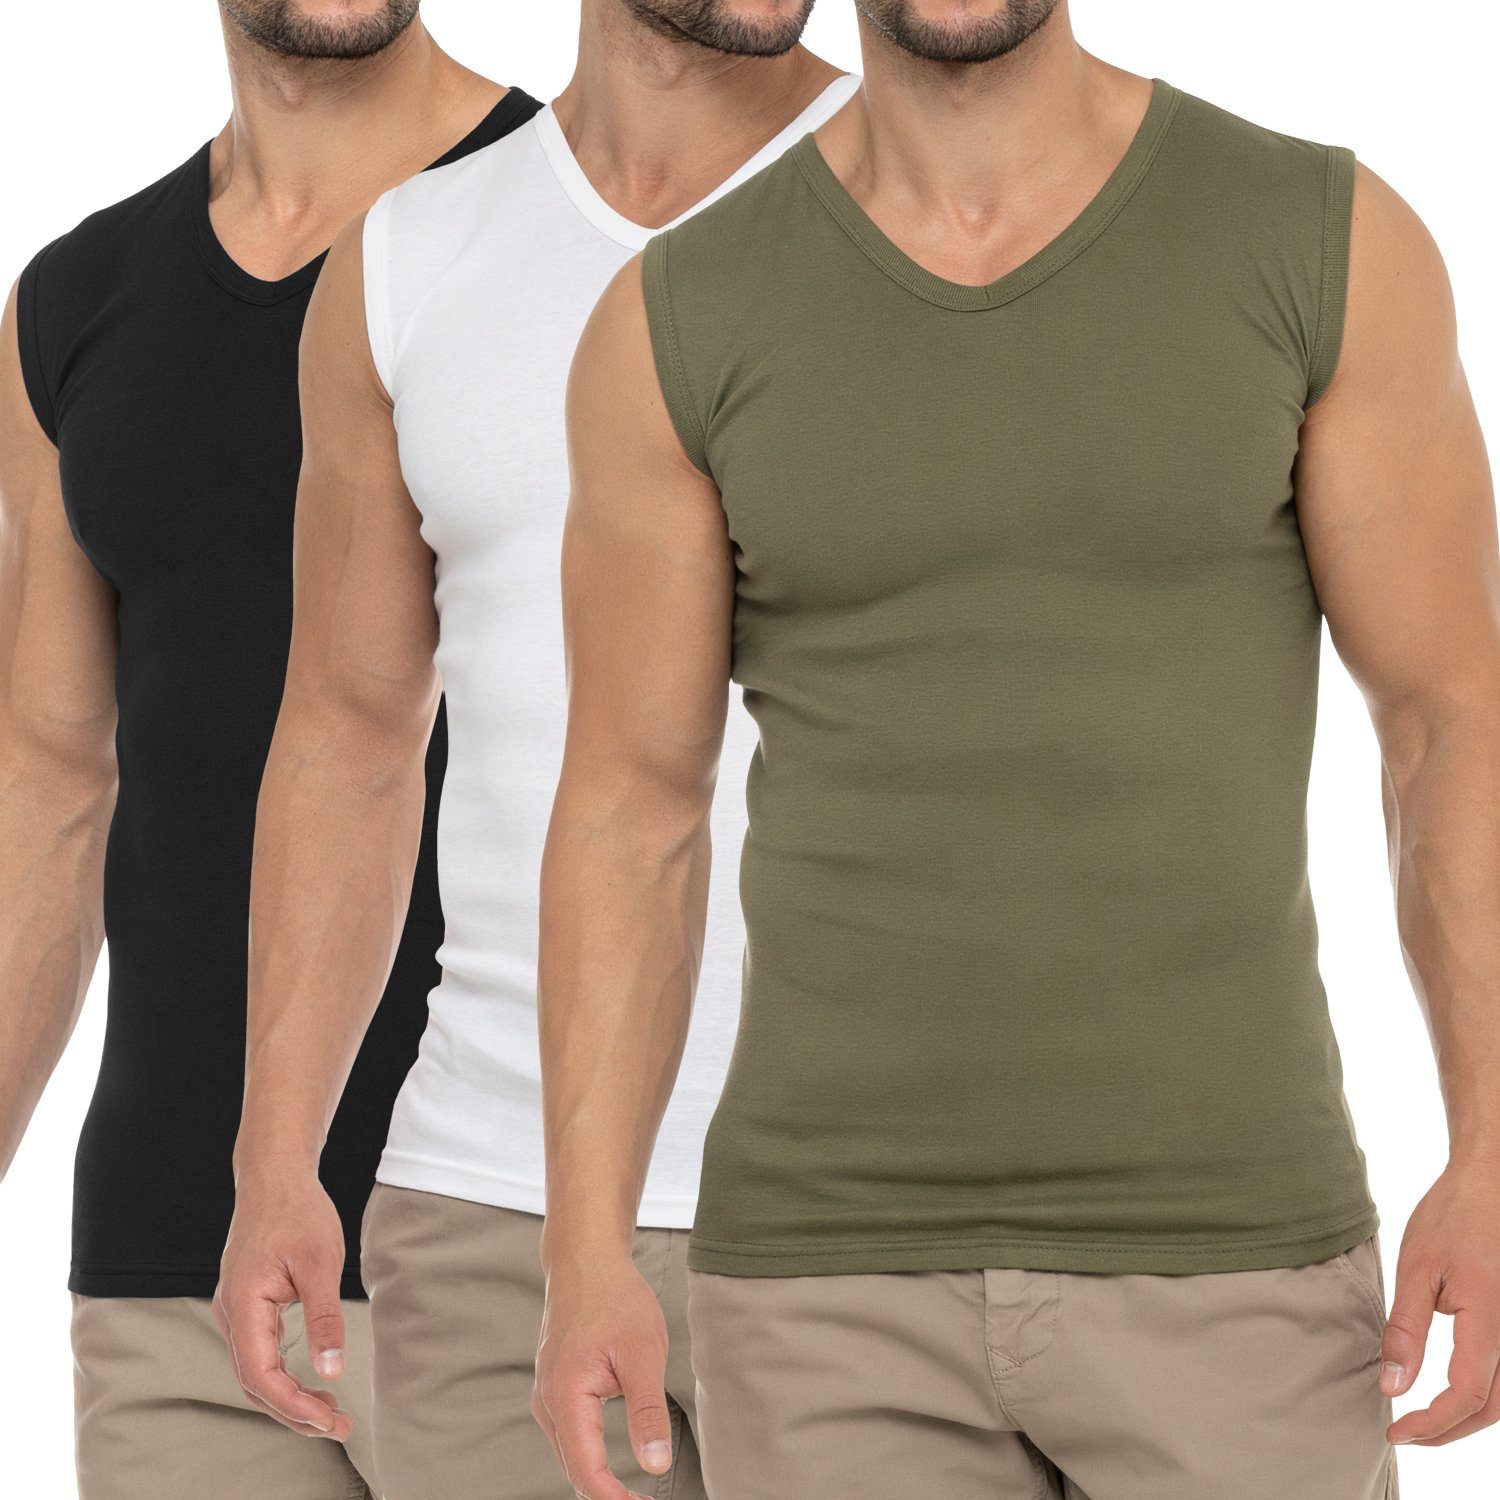 Herren celodoro Olive Muscle (3er Shirt Pack) Unterhemd / Schwarz V-Neck Weiss / Business Muskelshirt